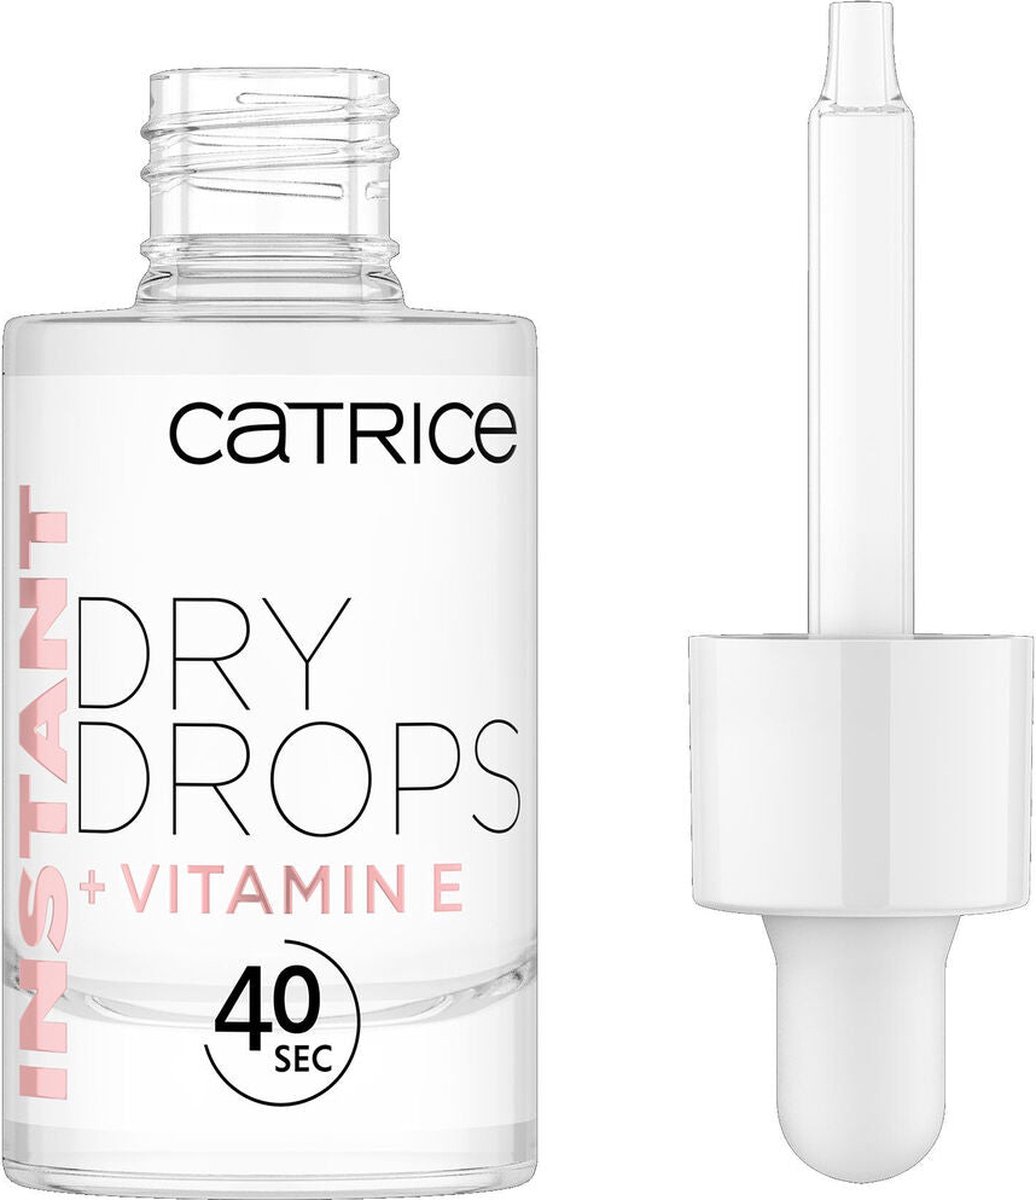 Catrice Instant Dry Drops + Vitamin E